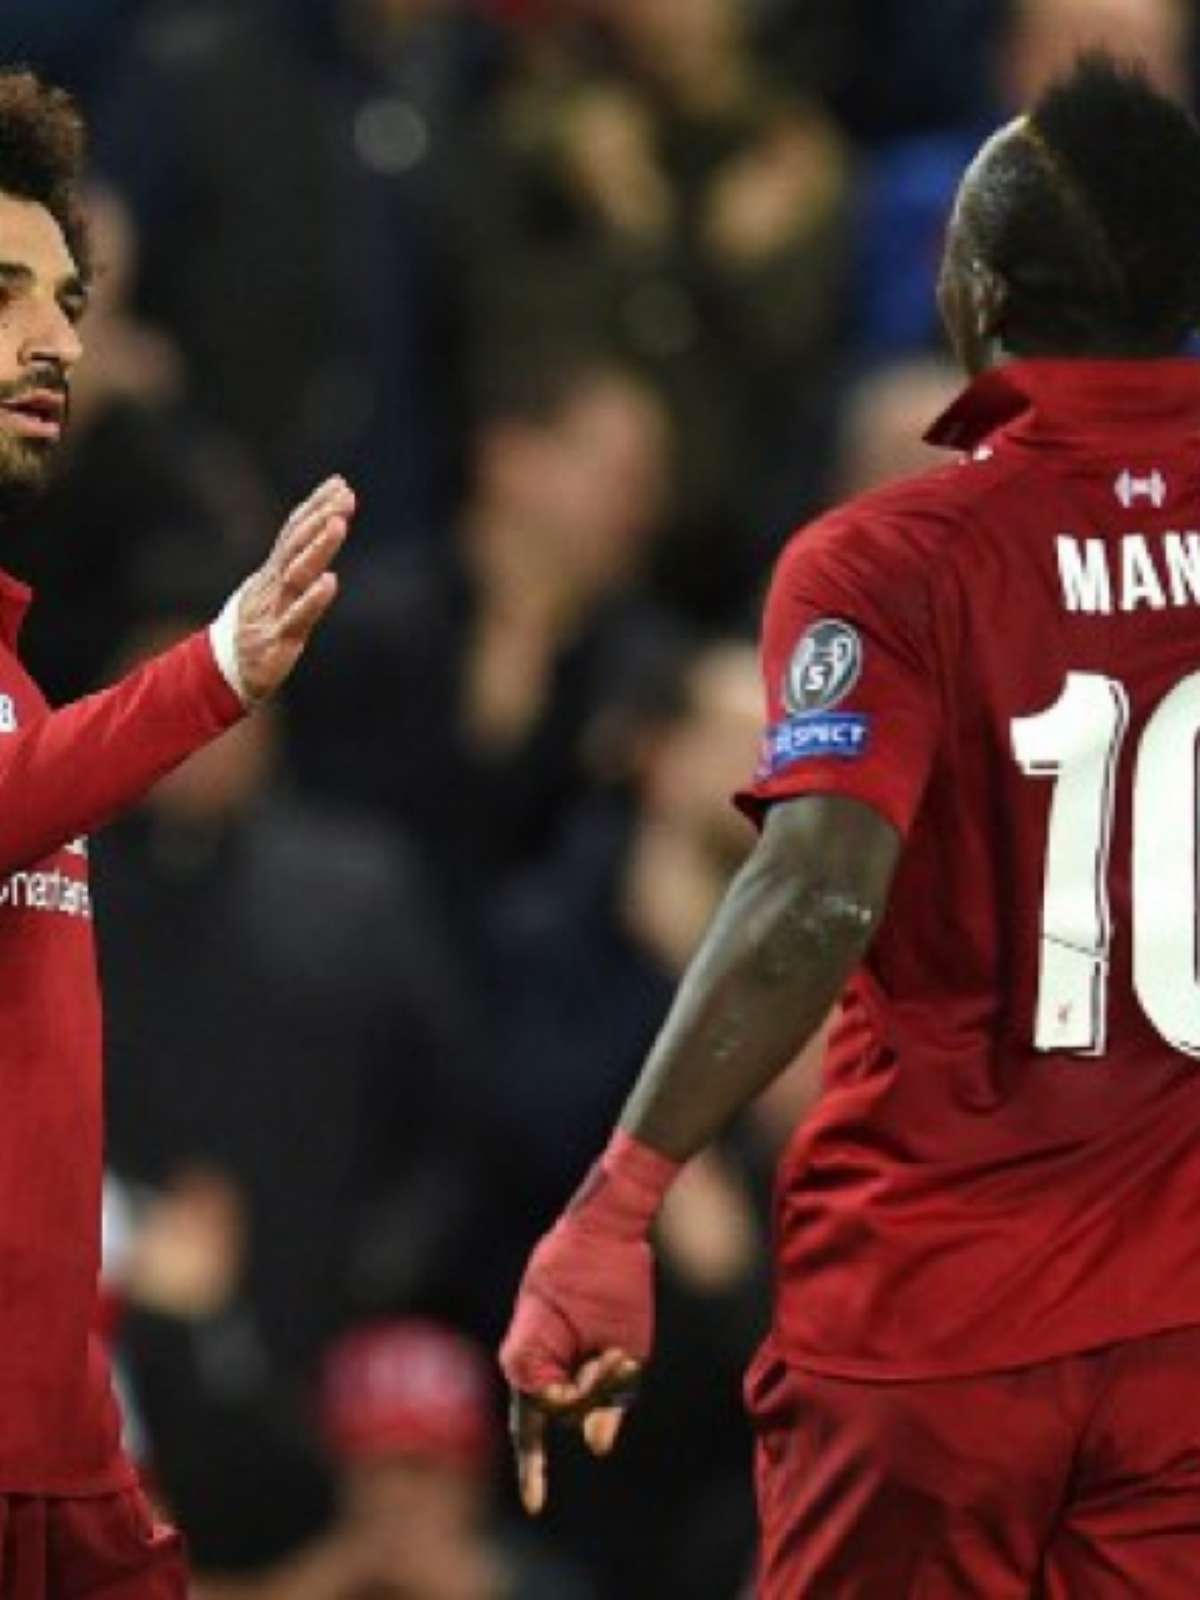 Football News - Acertou quem Respondeu Sadio Mané e Salah